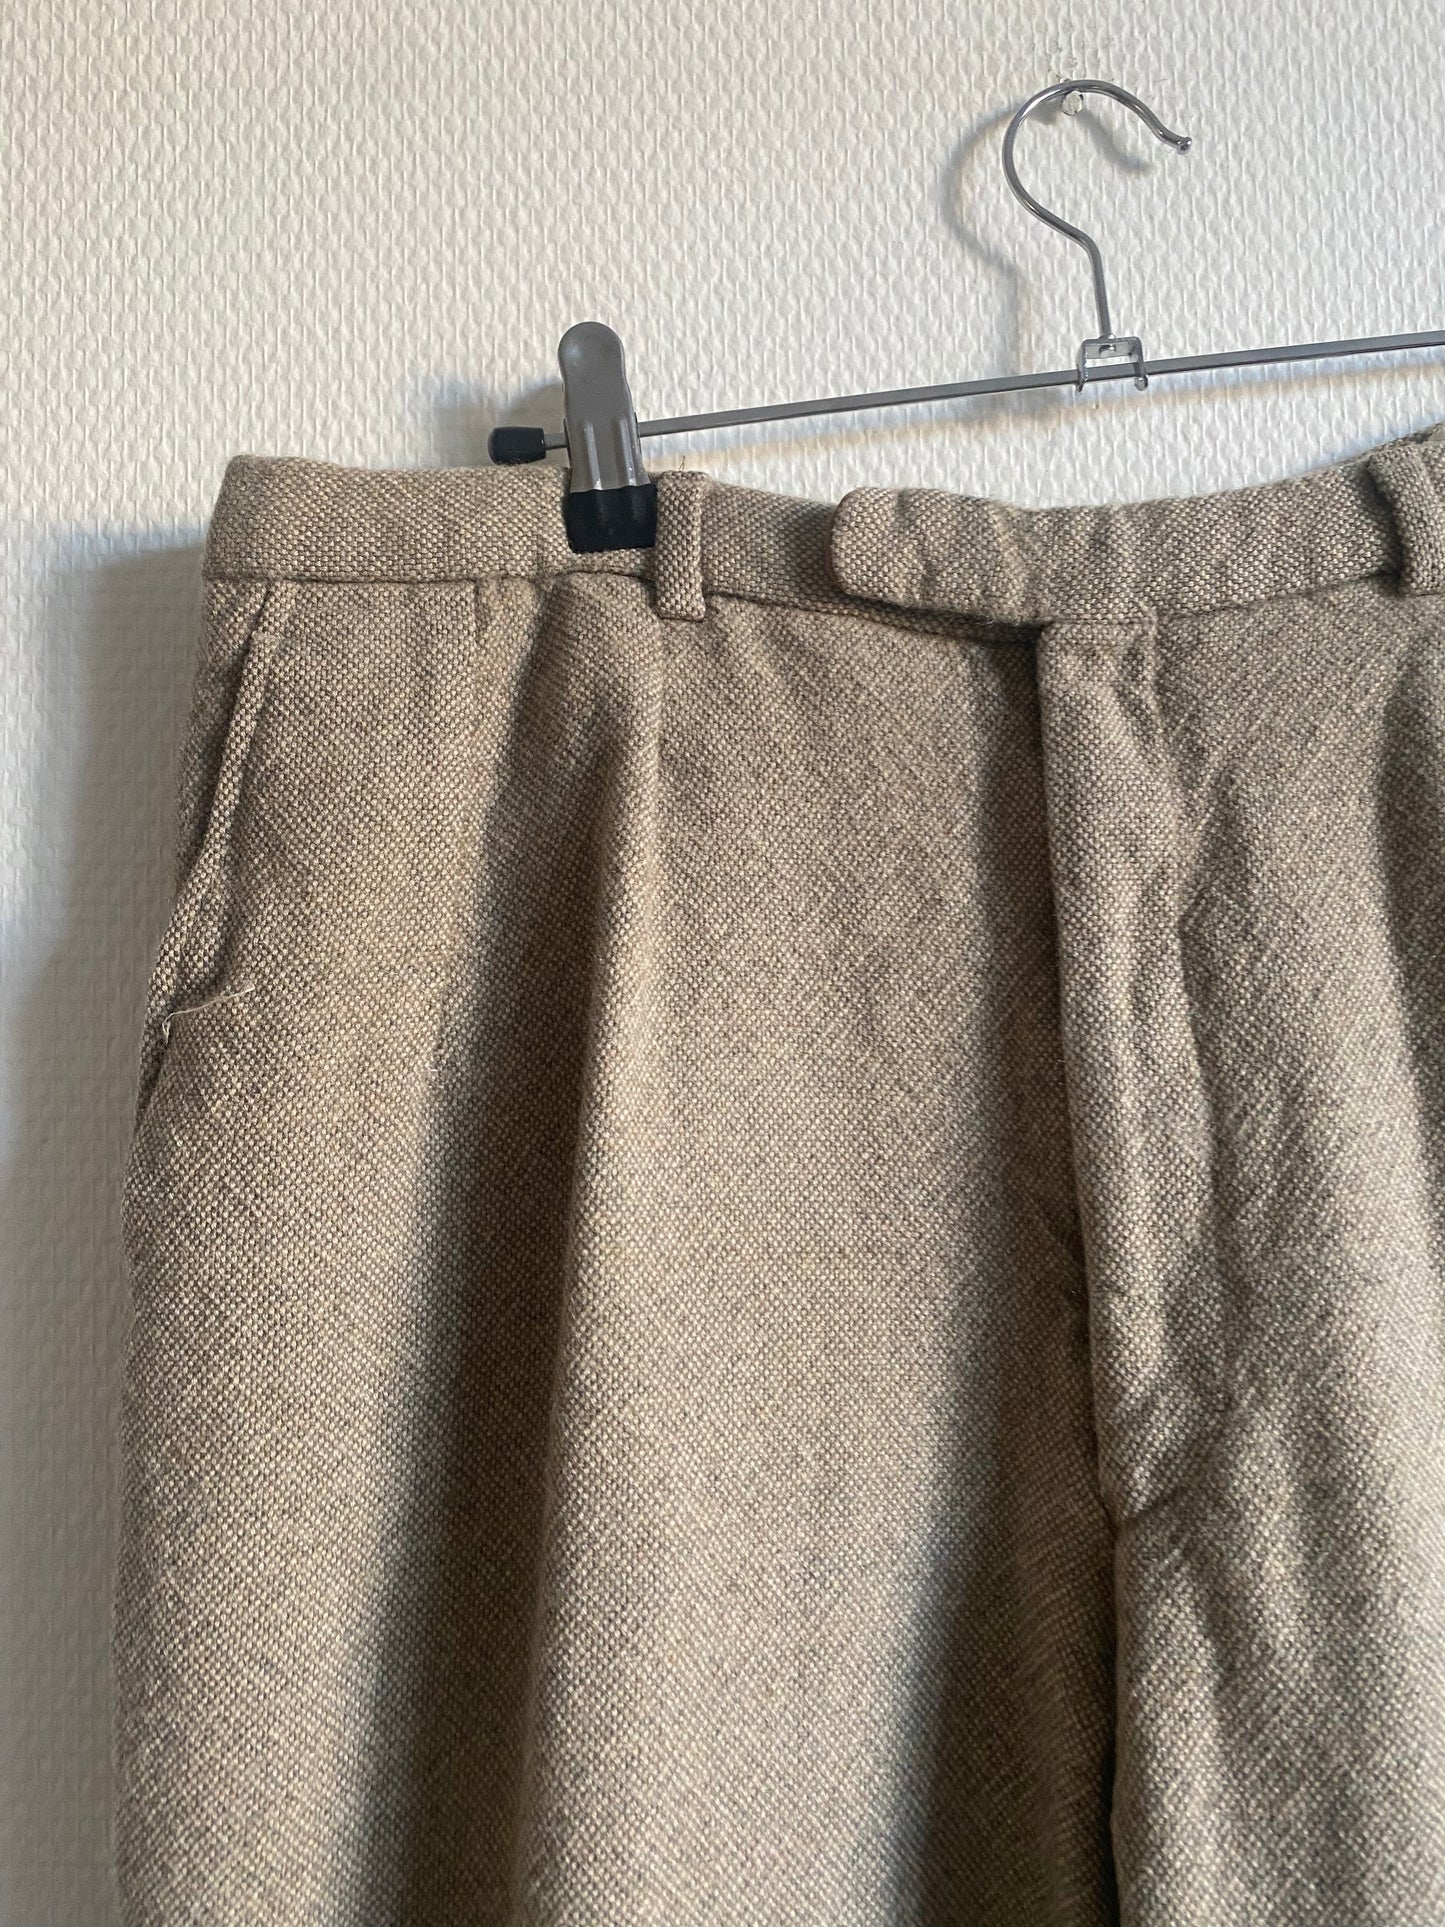 Pantalon en laine 70s